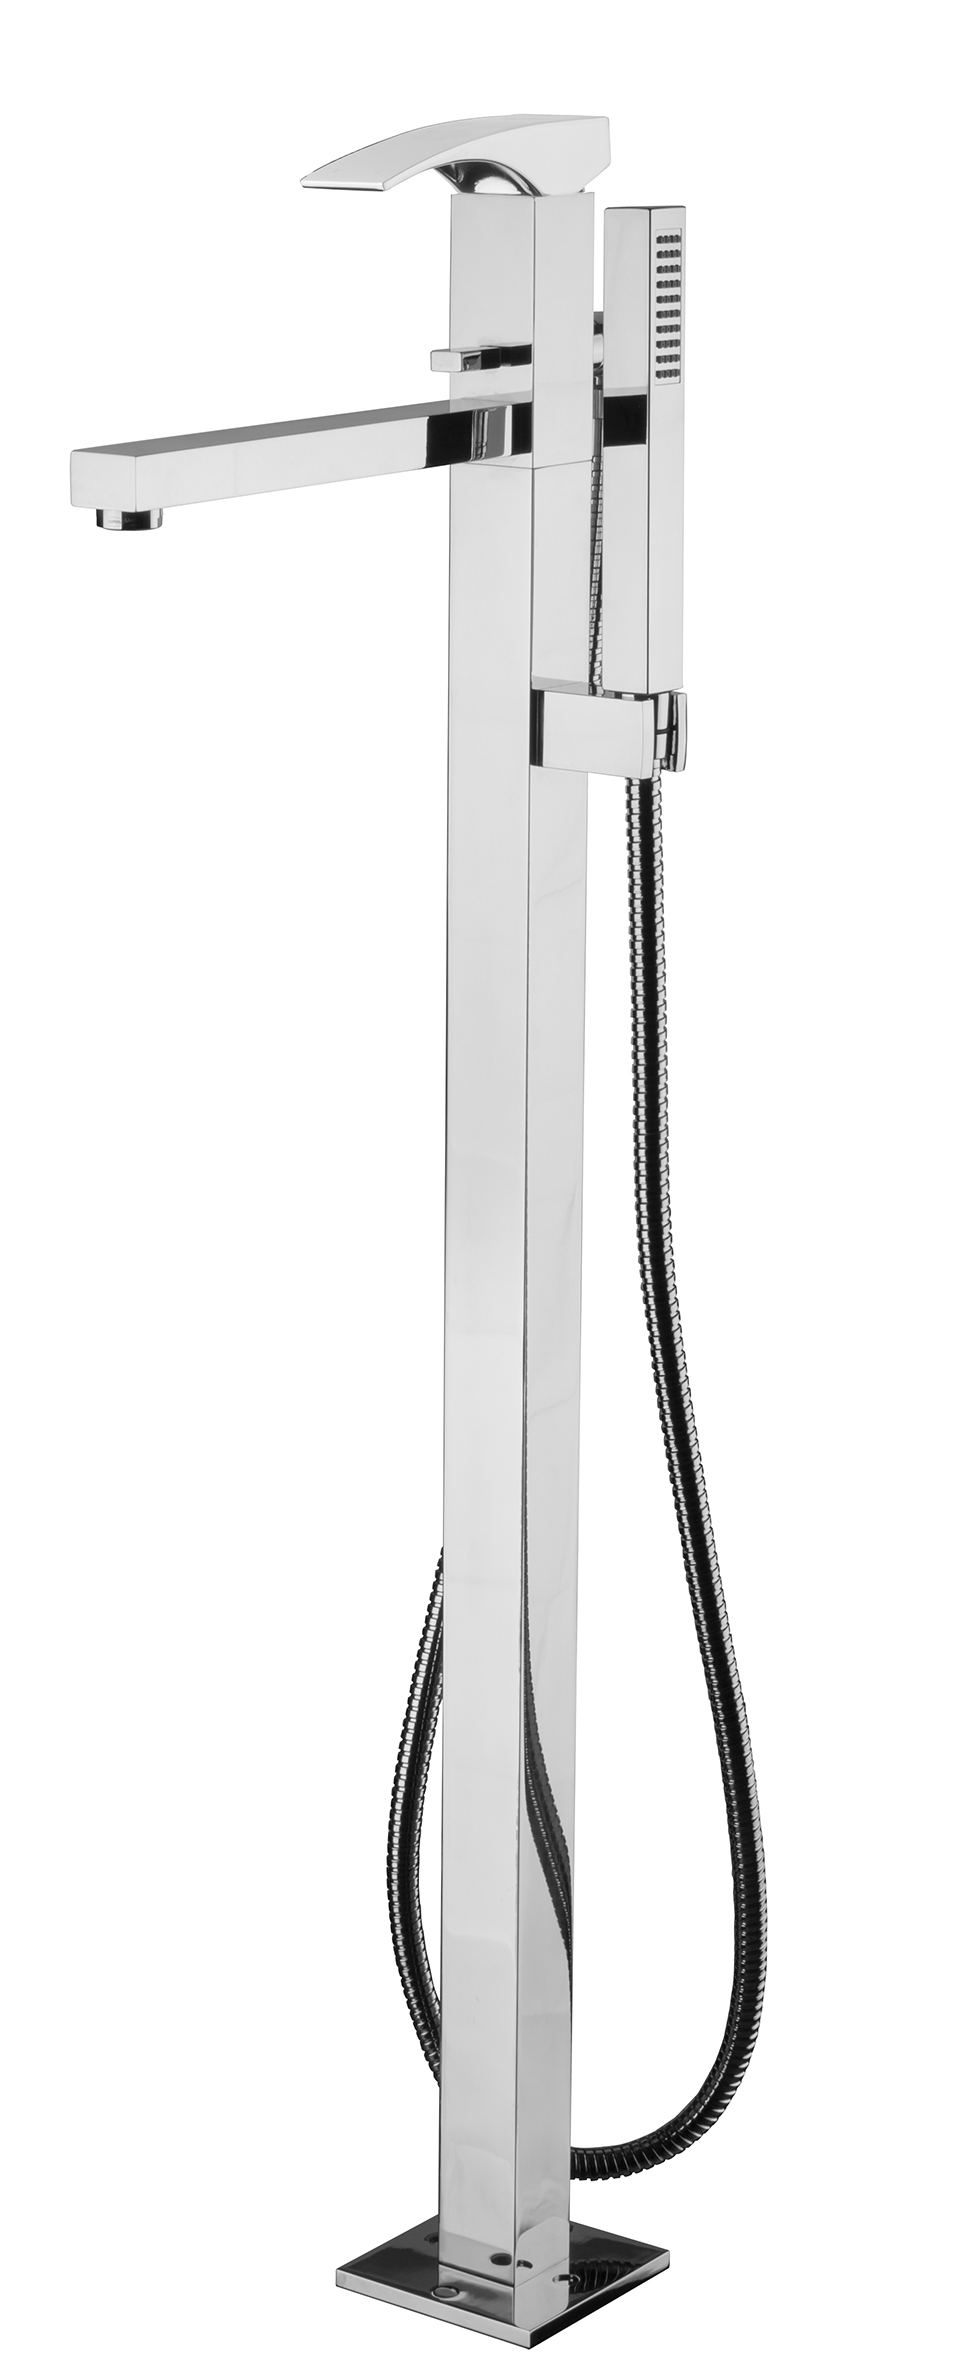 LASER Monocomando vasca a pavimento con kit doccia - Bagno Italiano